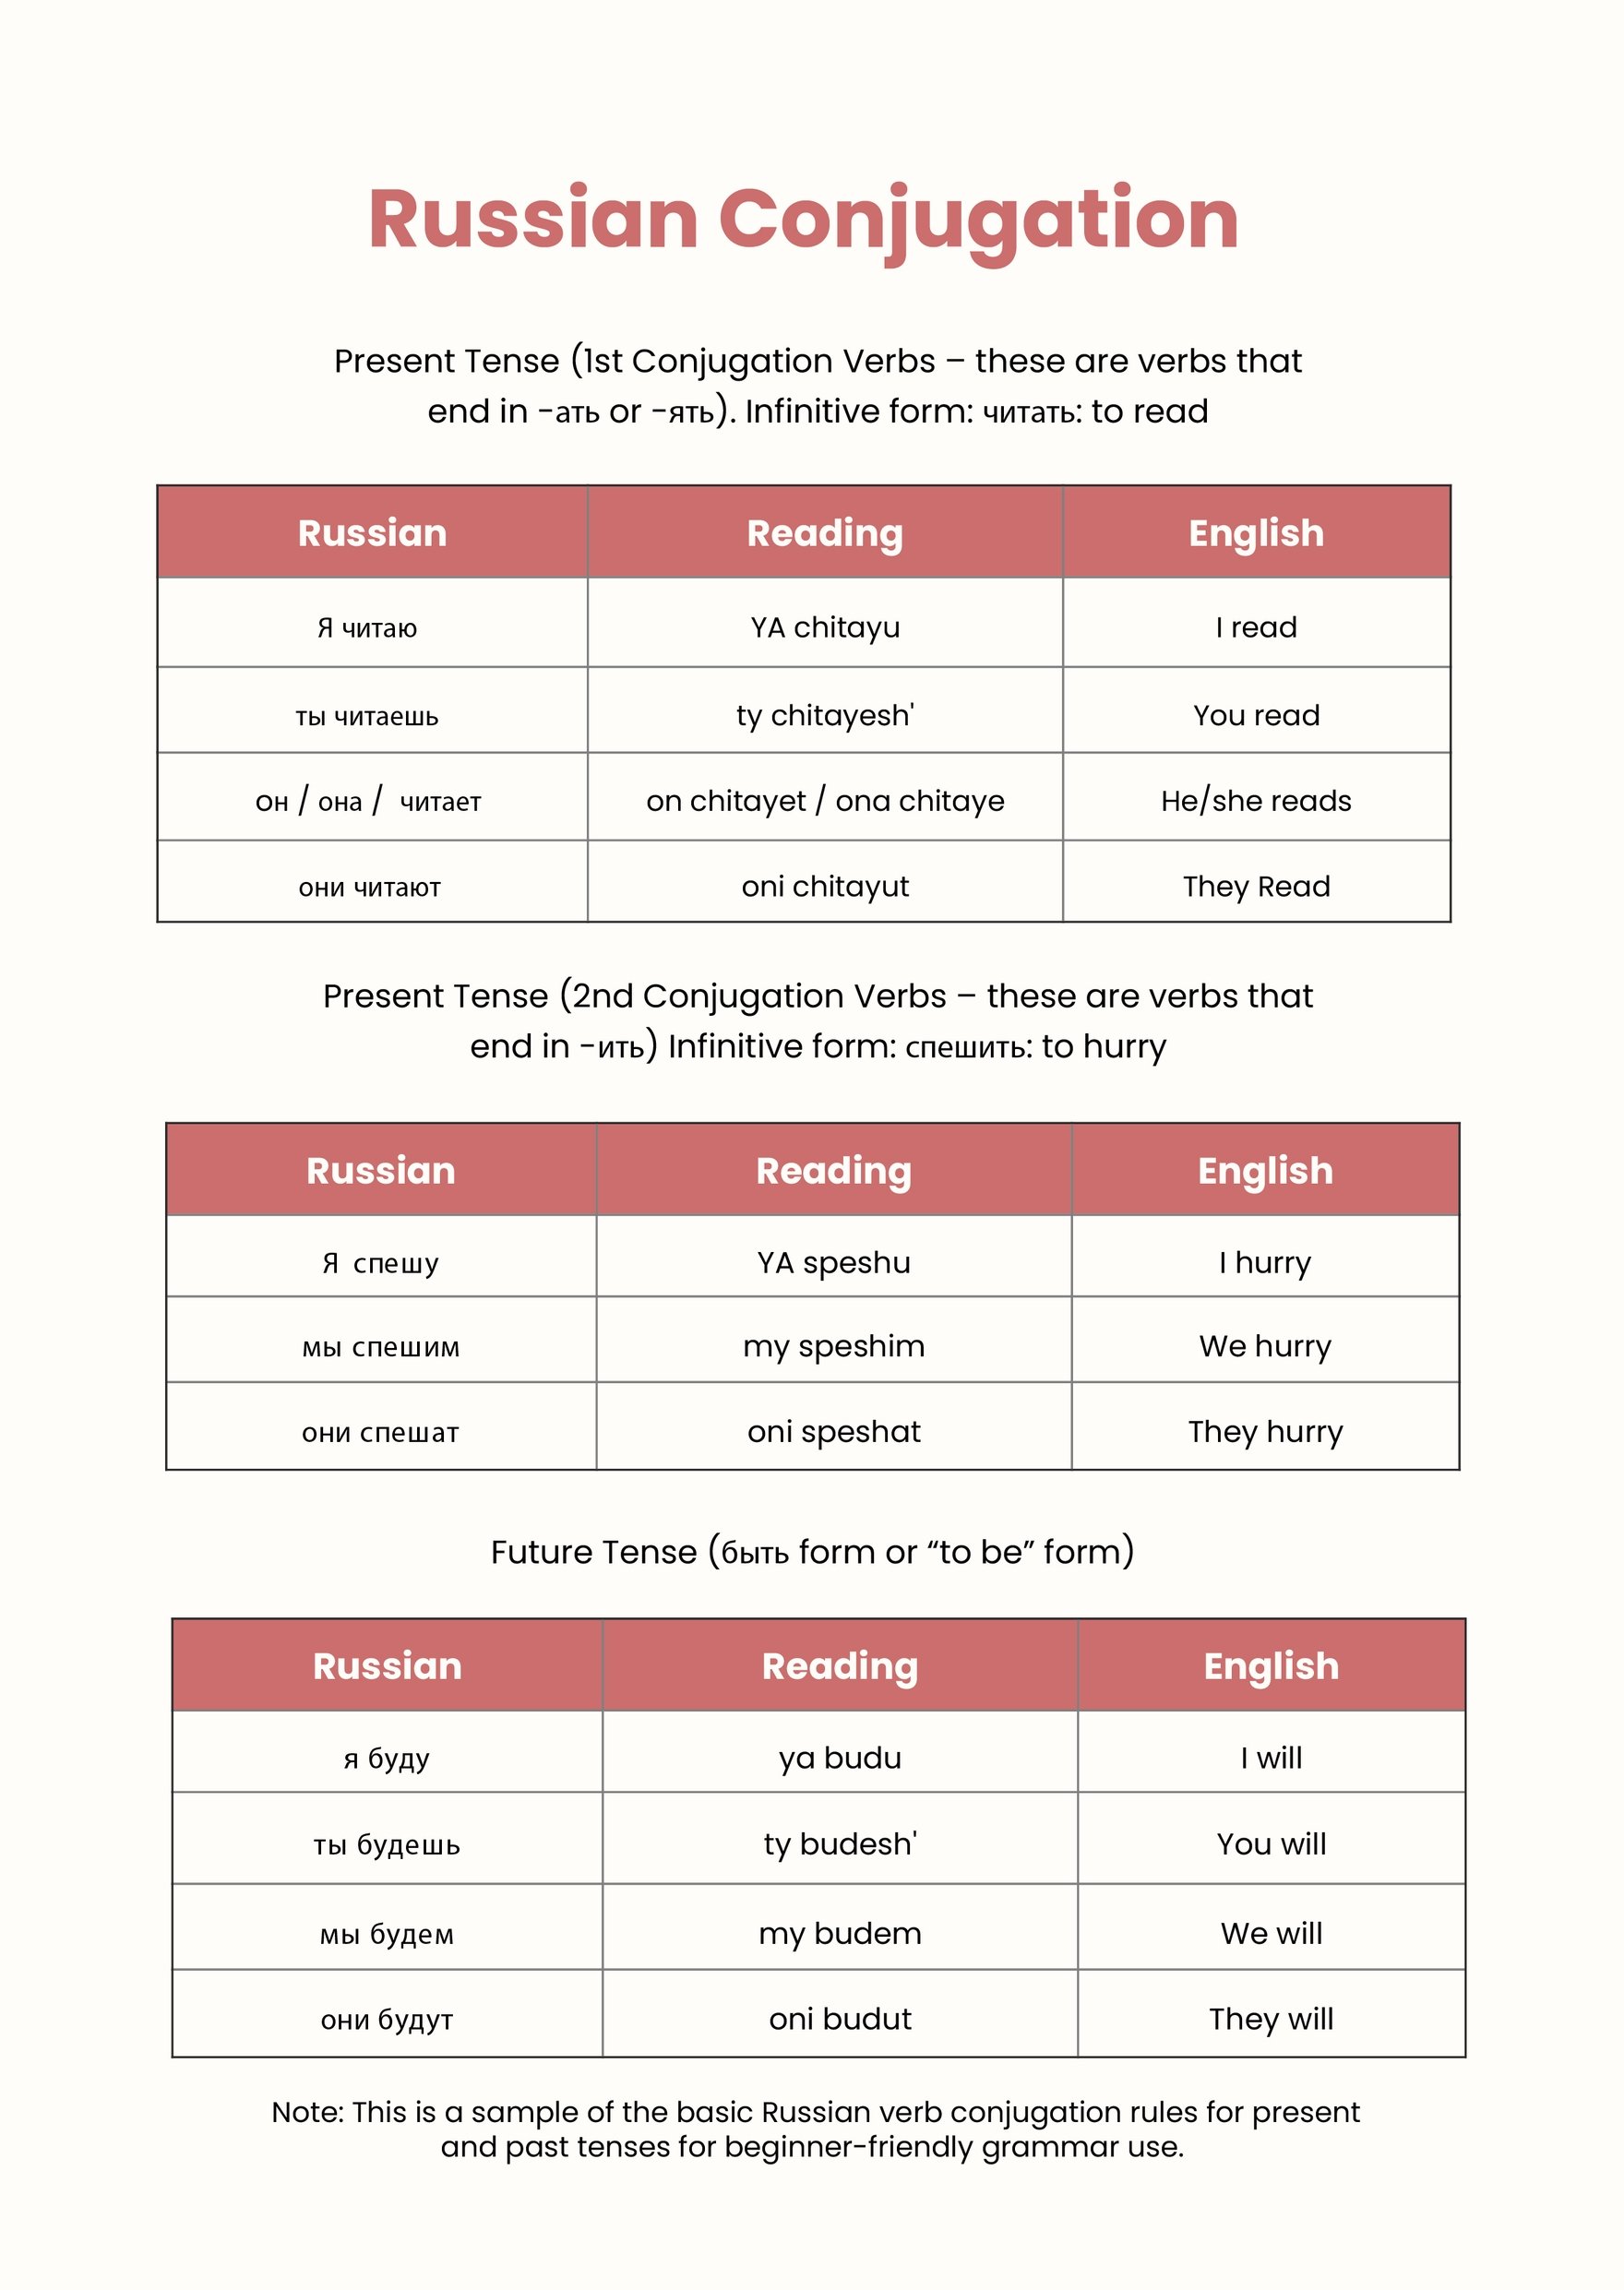 Free Russian Grammar Conjugation Chart - Download in PDF, Illustrator